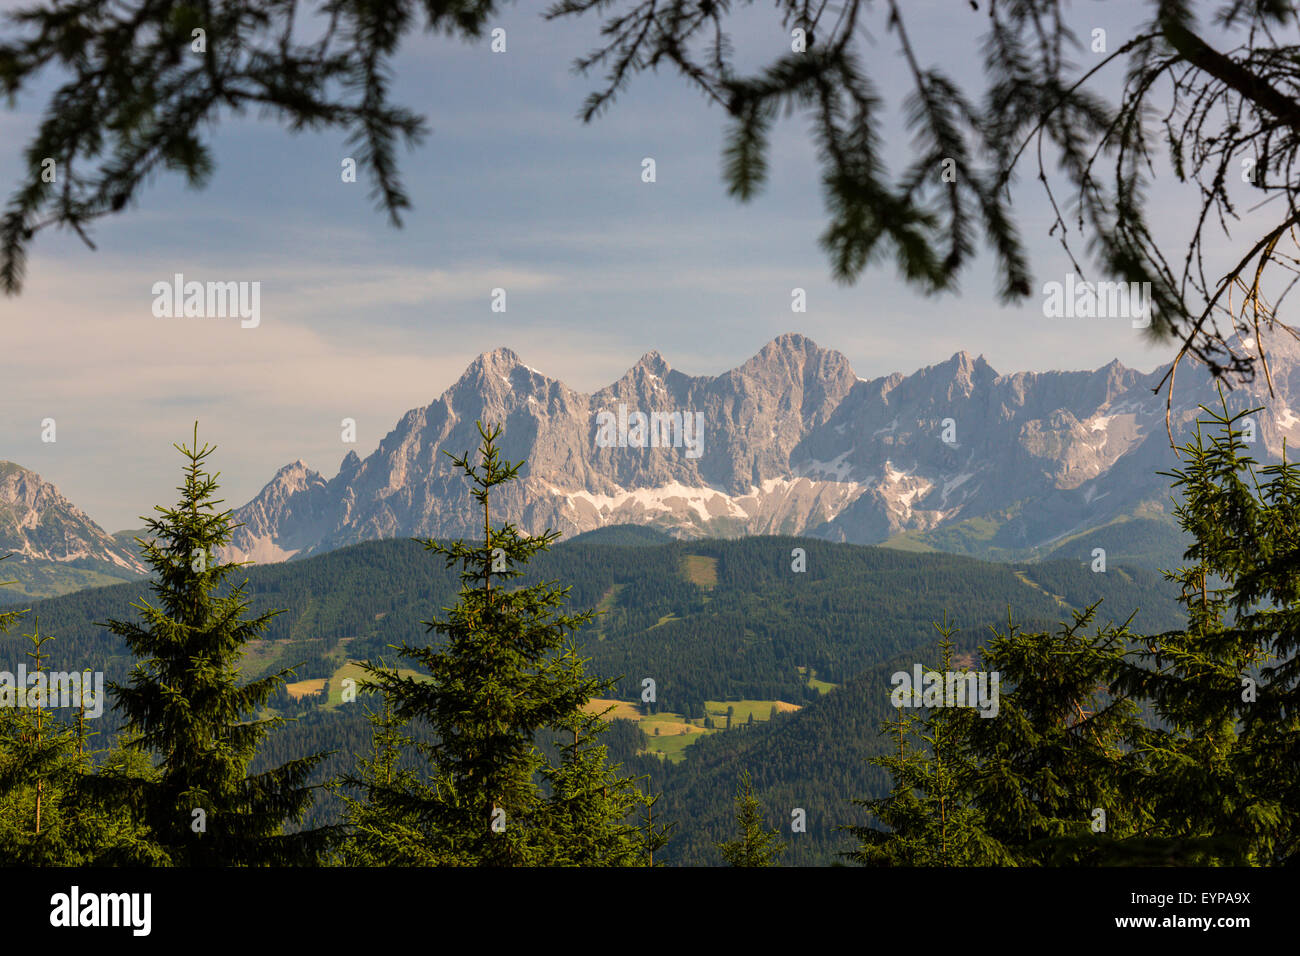 Geografie, Dachsteingebirge, Steiermark, Österreich Foto Stock